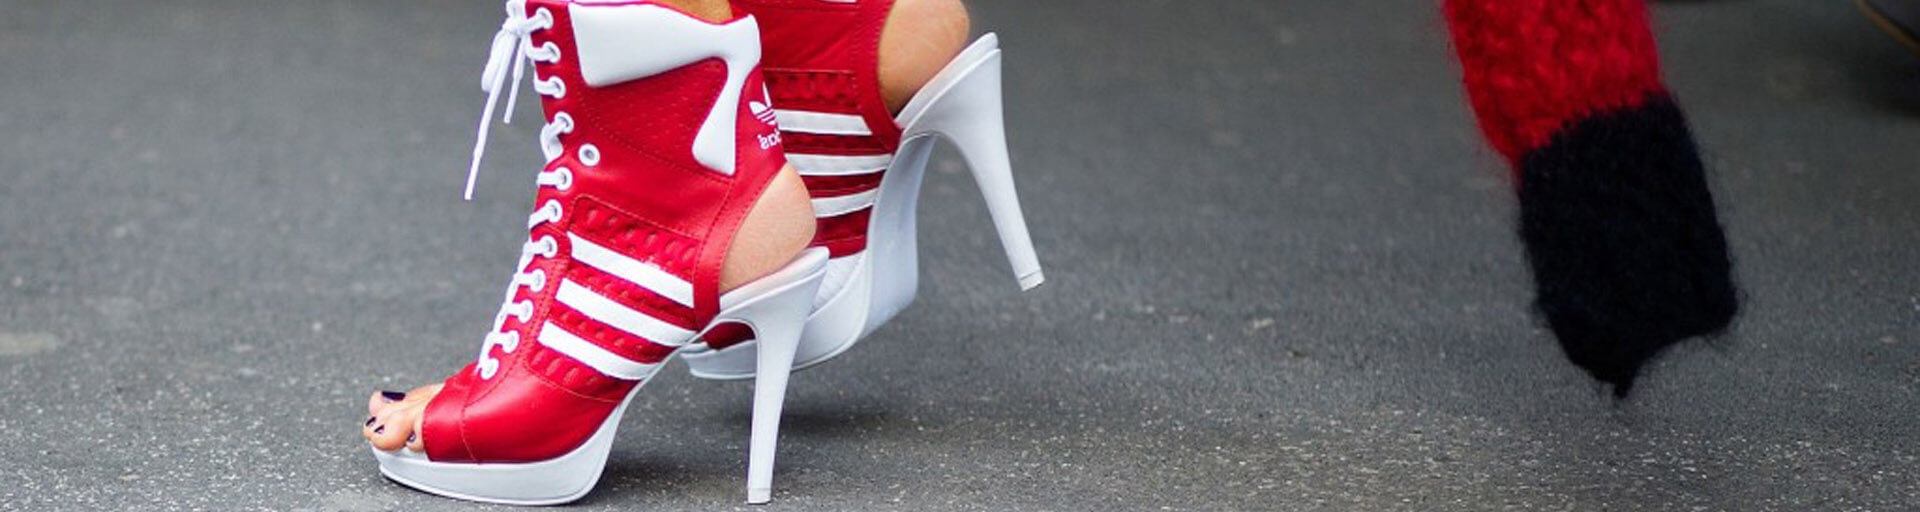 Кроссовки на каблуке: странные дизайны от спортивных брендов